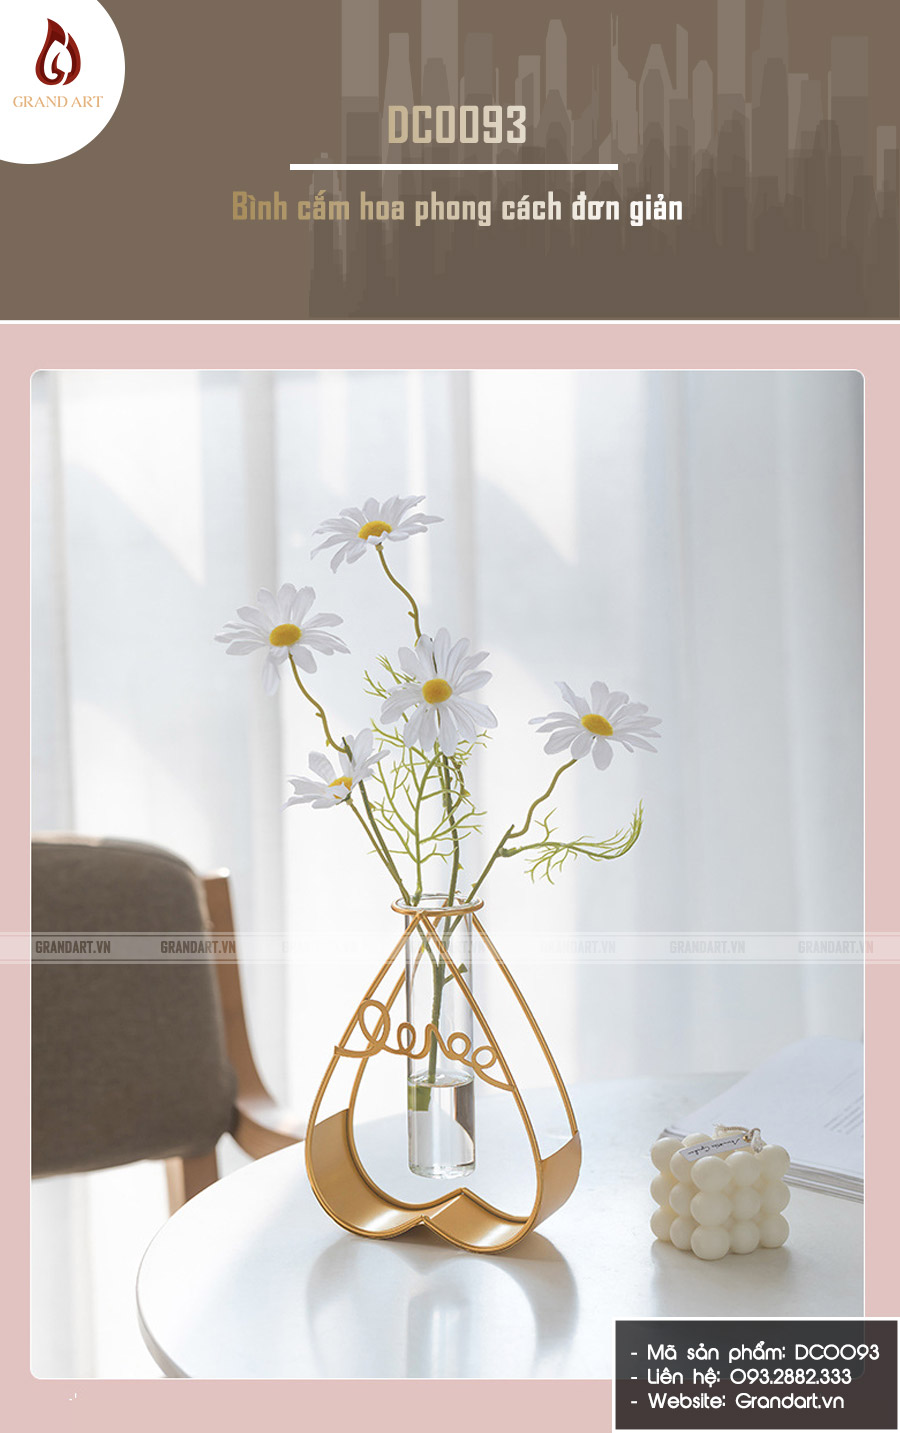 Bình cắm hoa phong cách đơn giản - DC0093